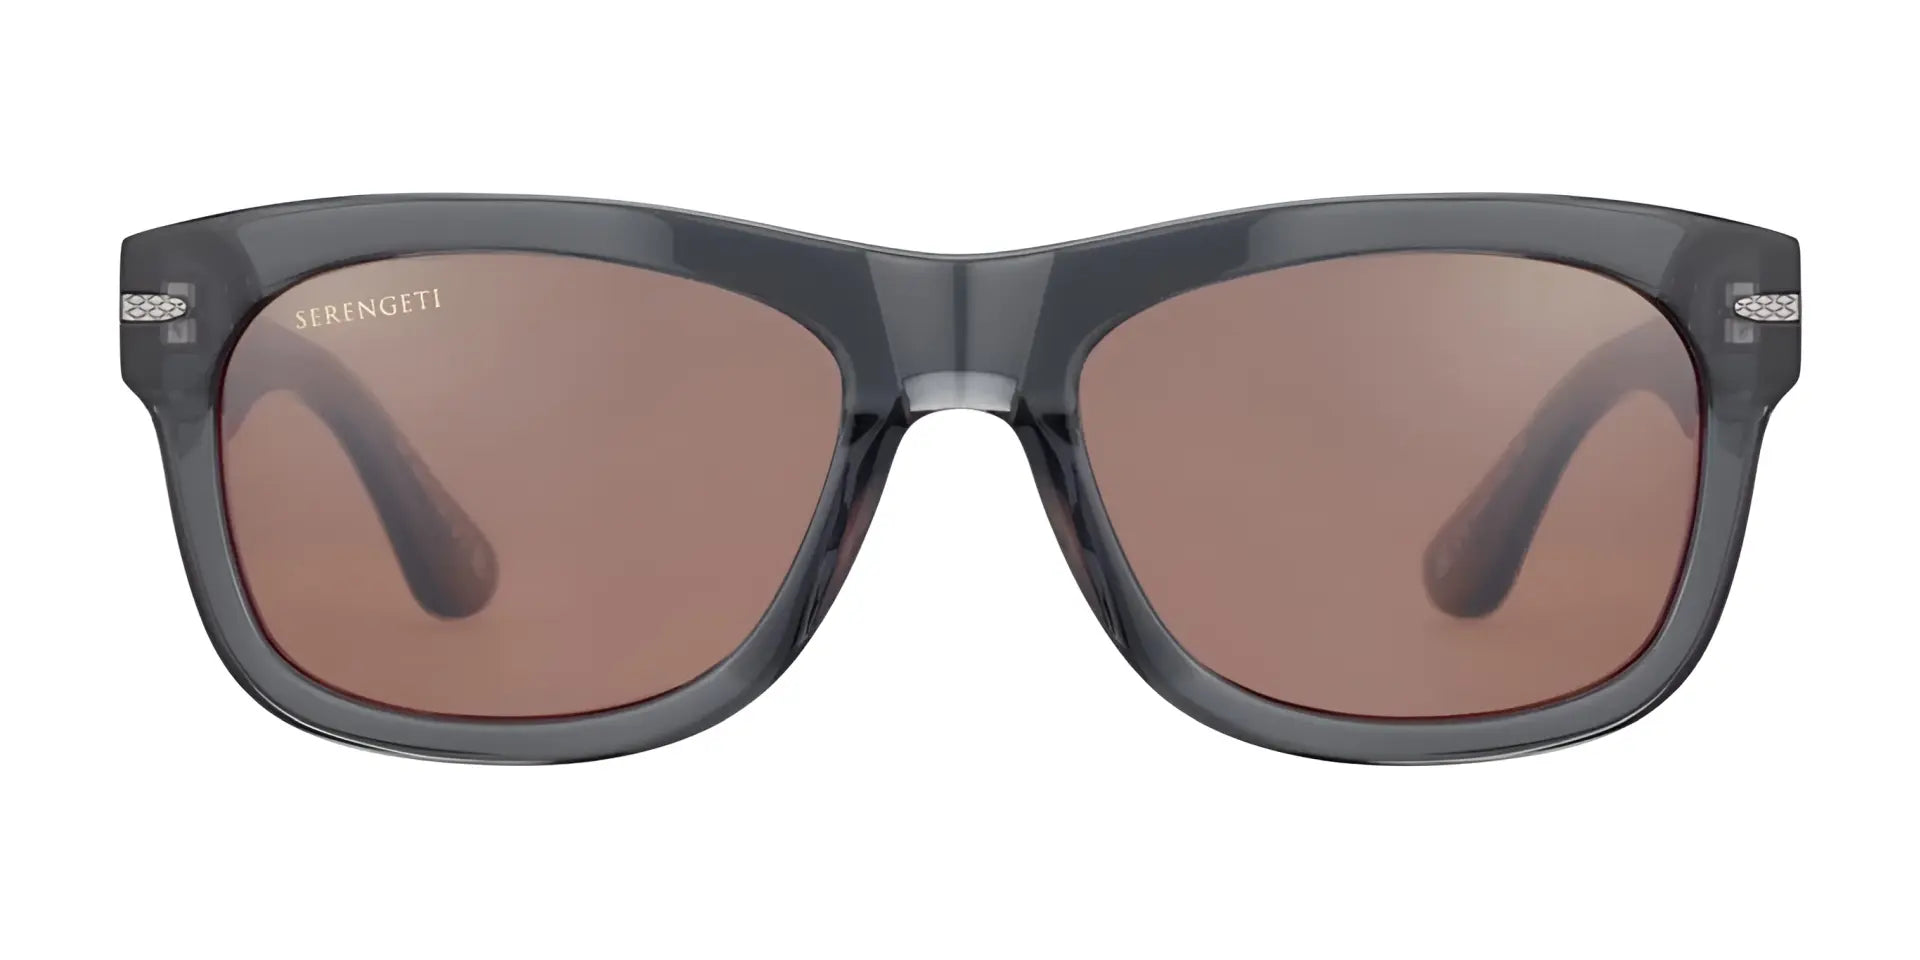 Serengeti FOYT Sunglasses Shiny Crystal Grey / Mineral Polarized Drivers Cat 2 to 3